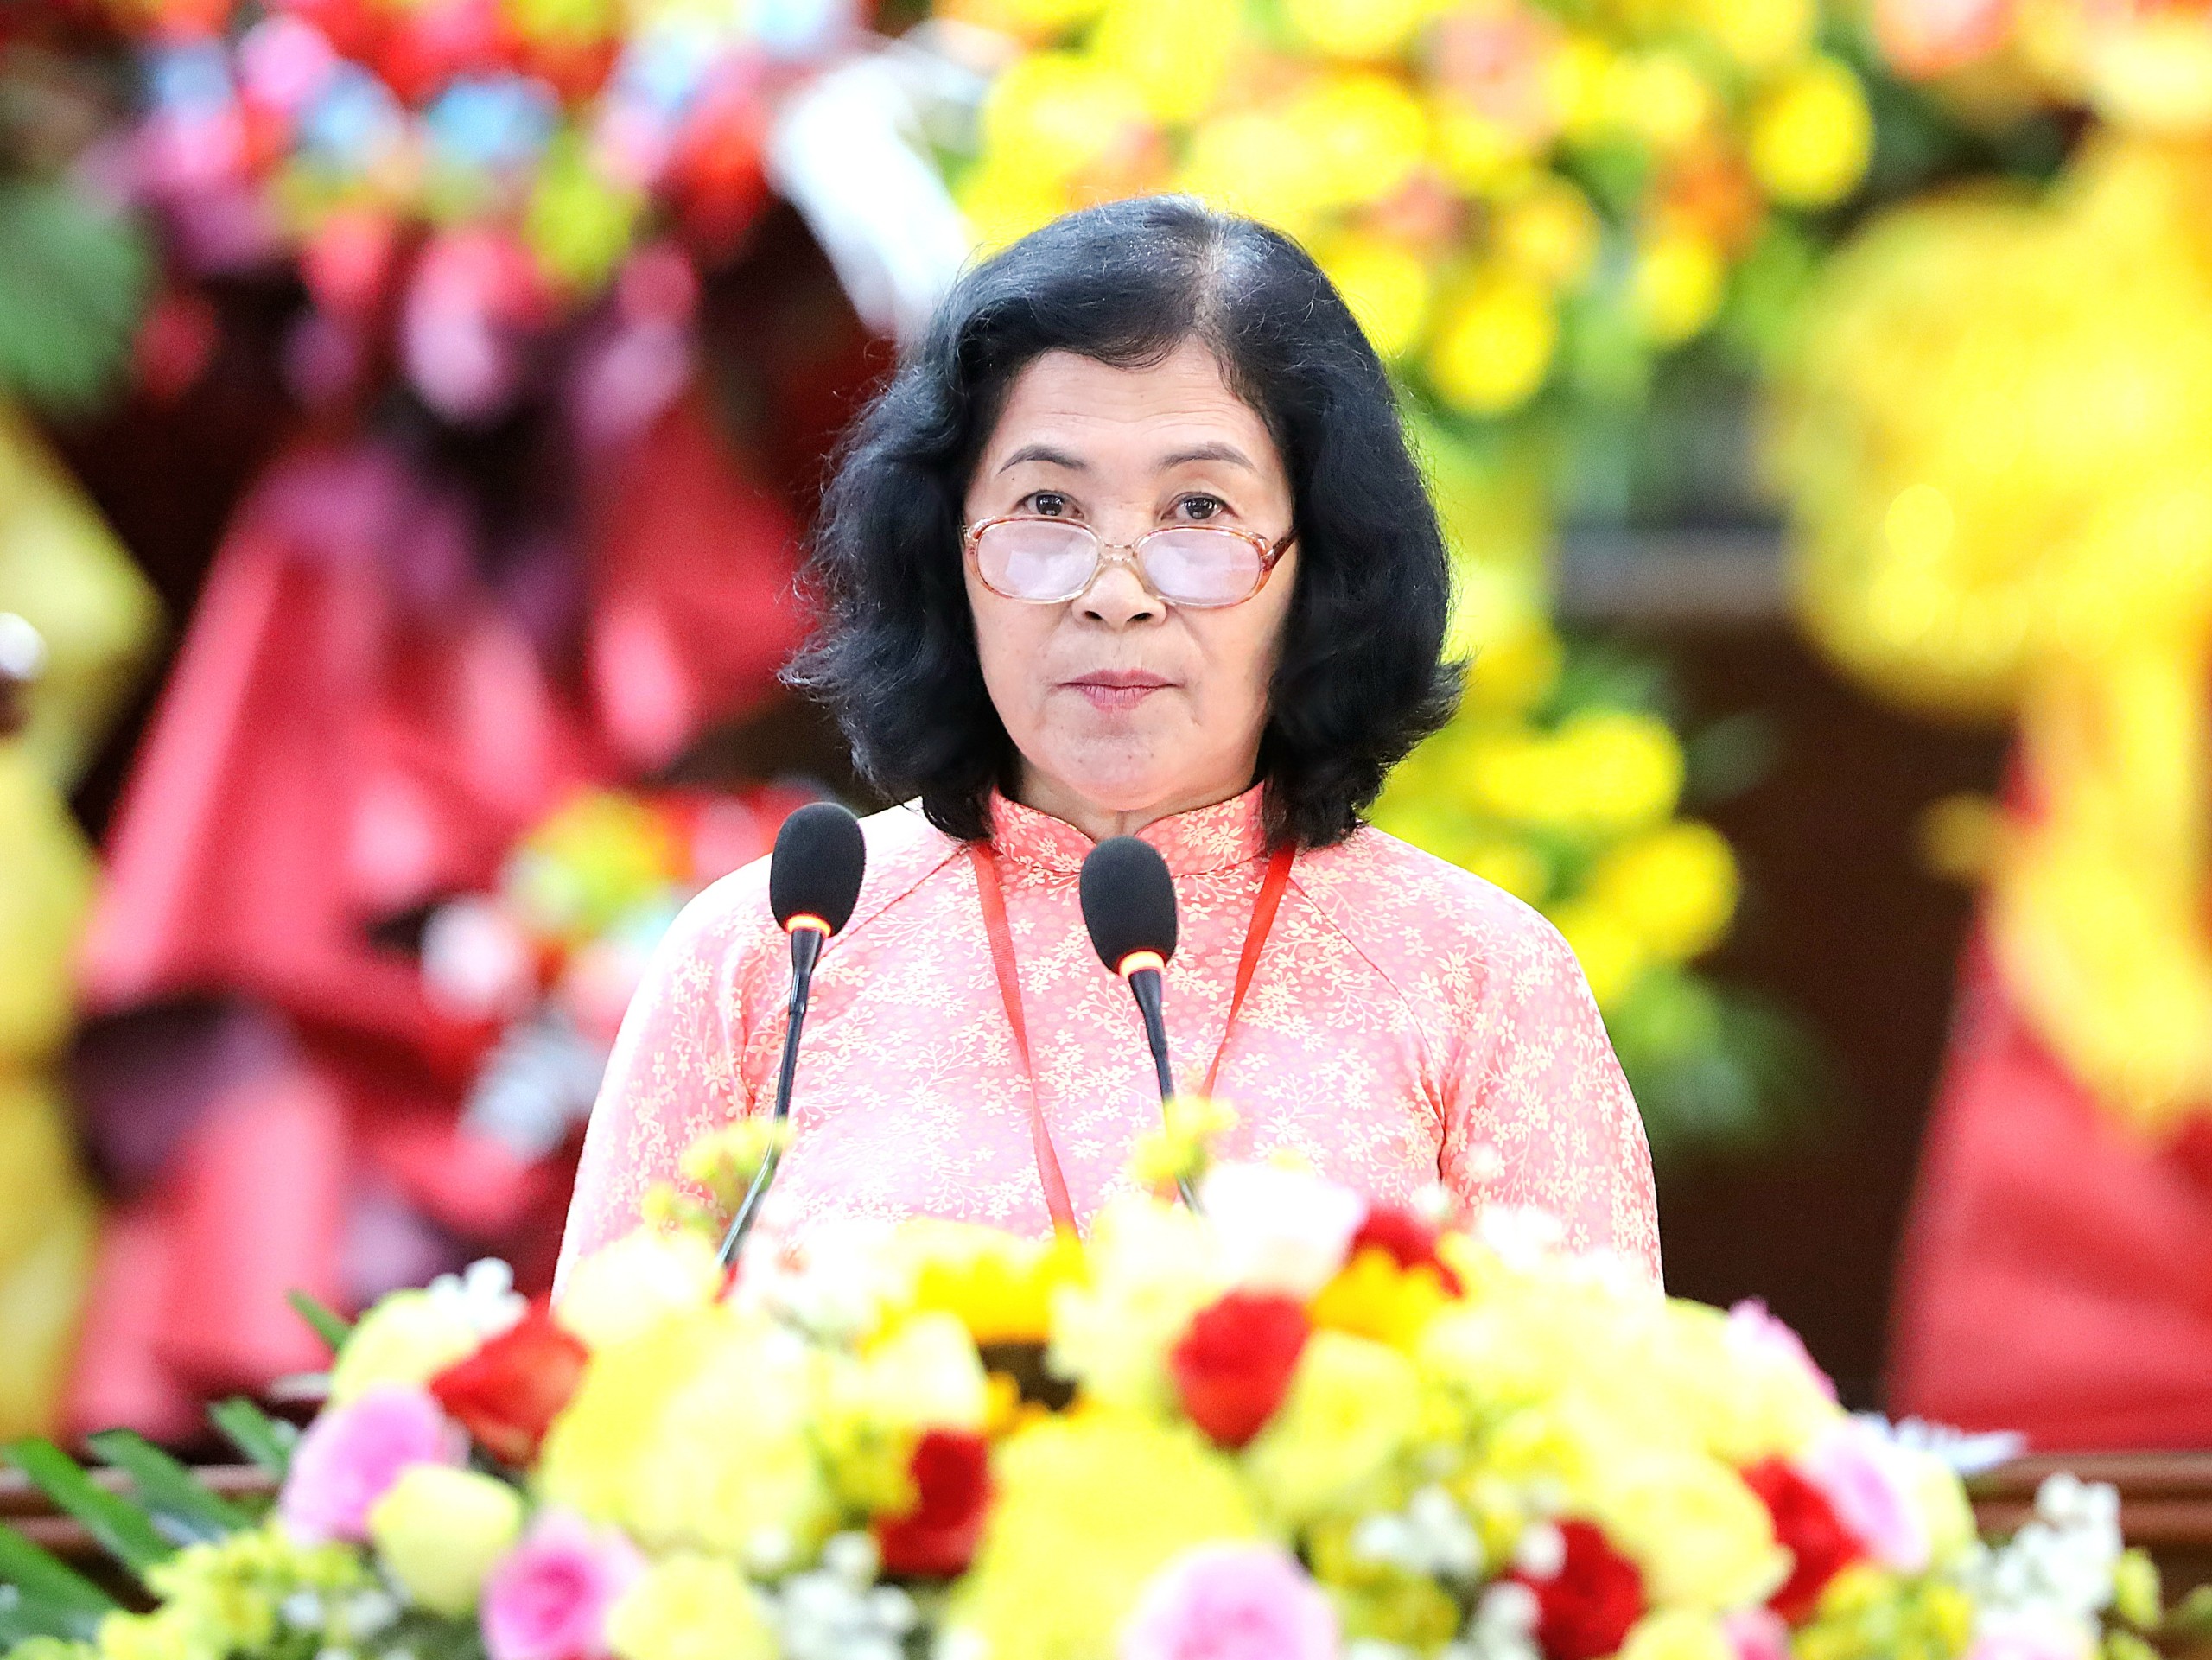 Bà Trần Lê Mộng Châu - Phó Chủ tịch Liên hiệp các tổ chức hữu nghị TP. Cần Thơ báo cáo chính trị nhiệm kỳ 2018 - 2023 và phương hướng hoạt động nhiệm kỳ 2024 - 2029.